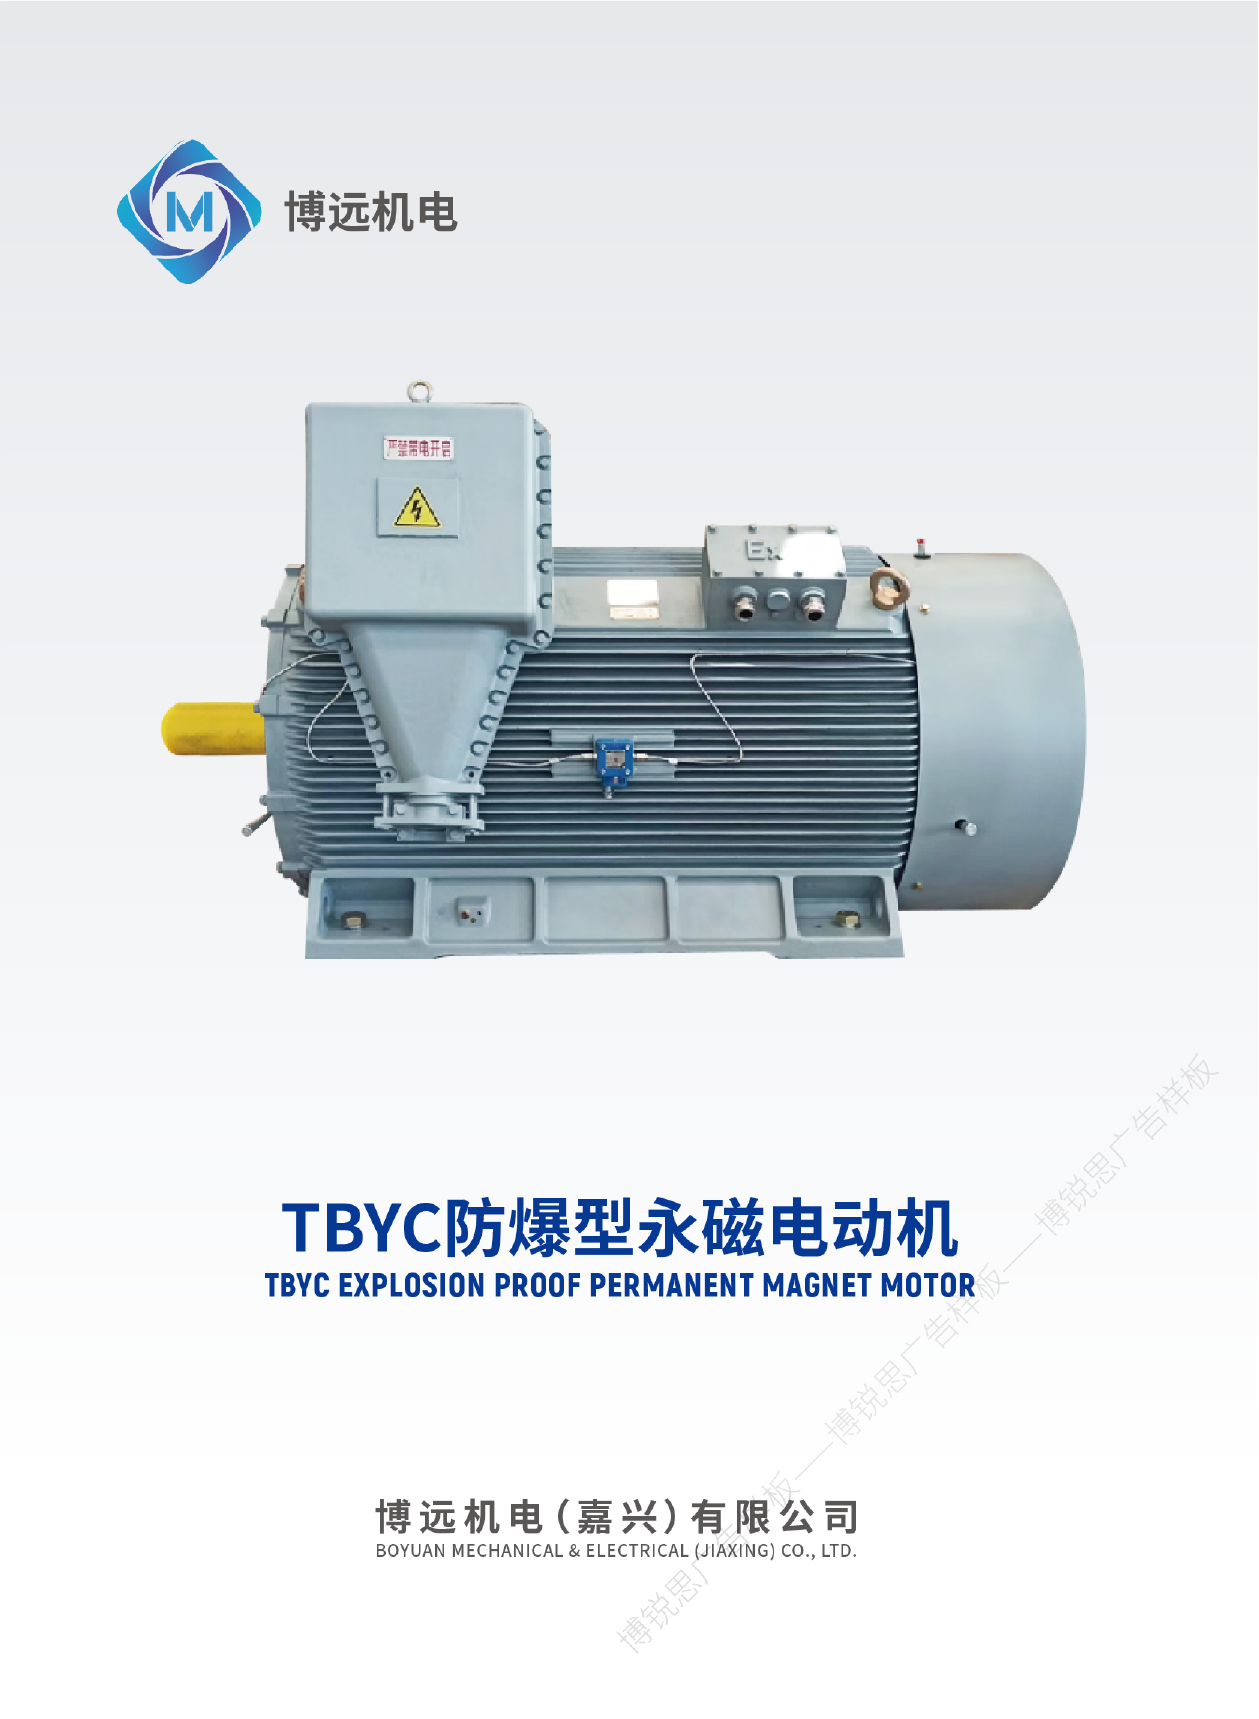 非变频永磁同步电动机TBYC-01.png